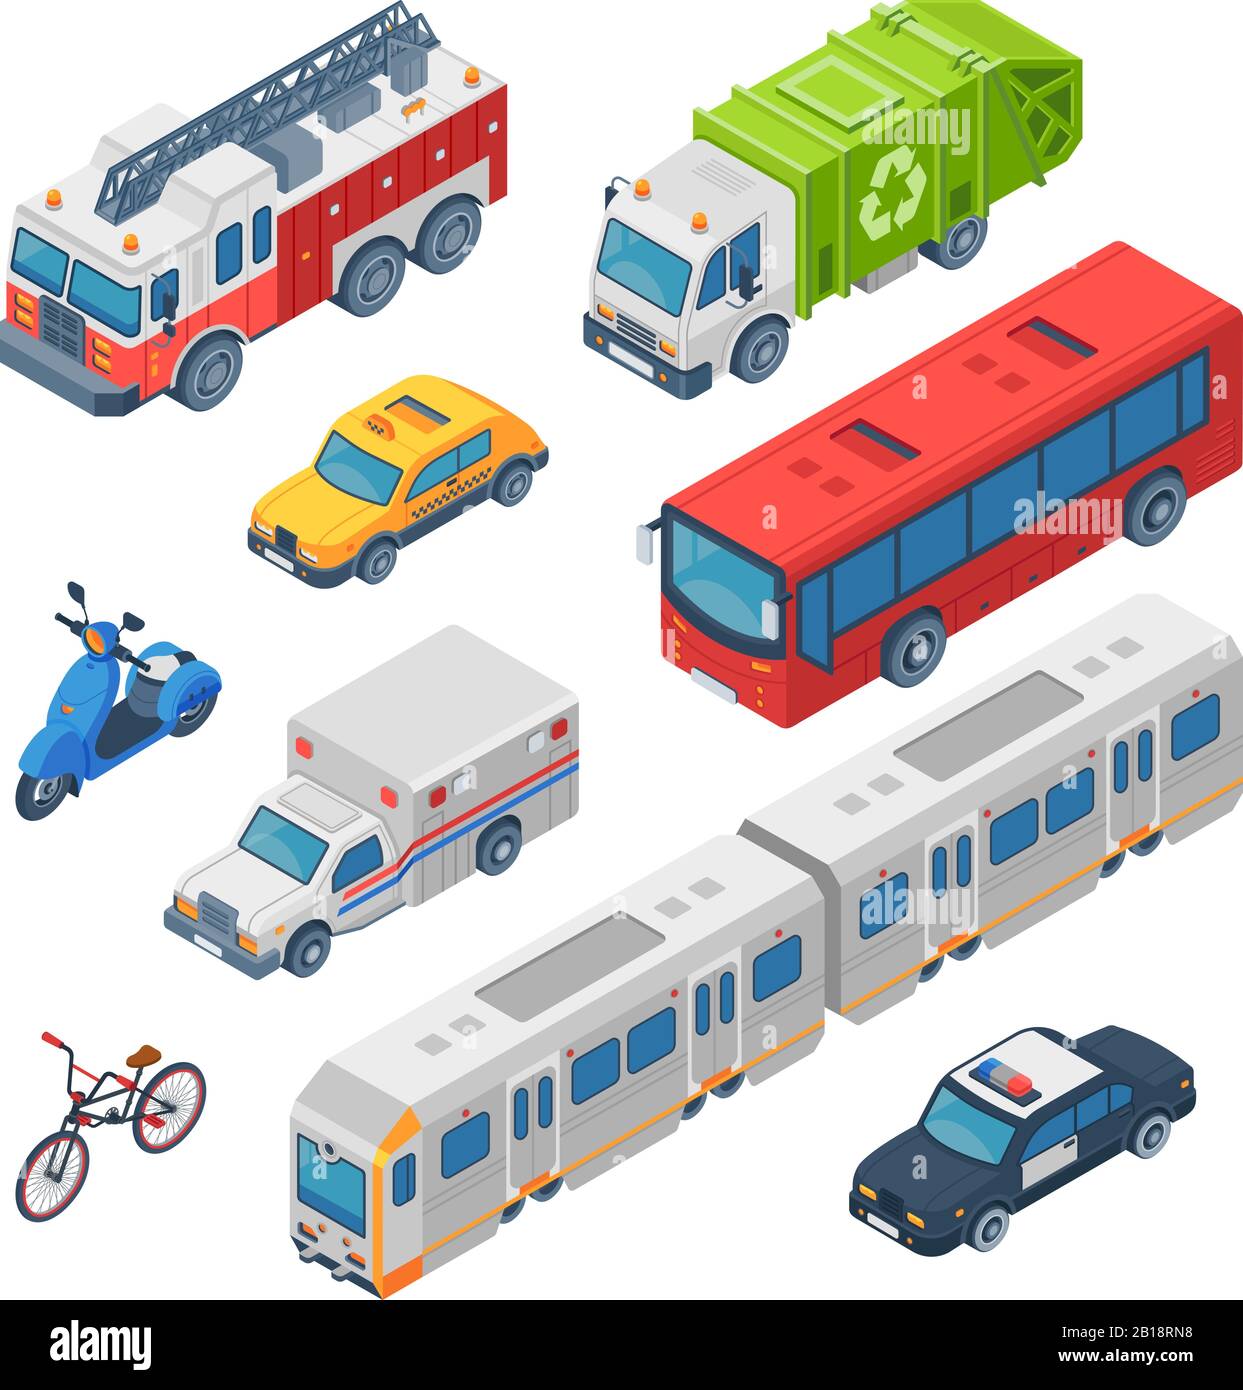 Isometrischer Stadtverkehr. Rettungswagen, Polizeiwagen und Feuerwehrauto. U-Bahn, Stadttaxi und öffentlicher Bus. Verkehrswagen 3d Vektor gesetzt Stock Vektor